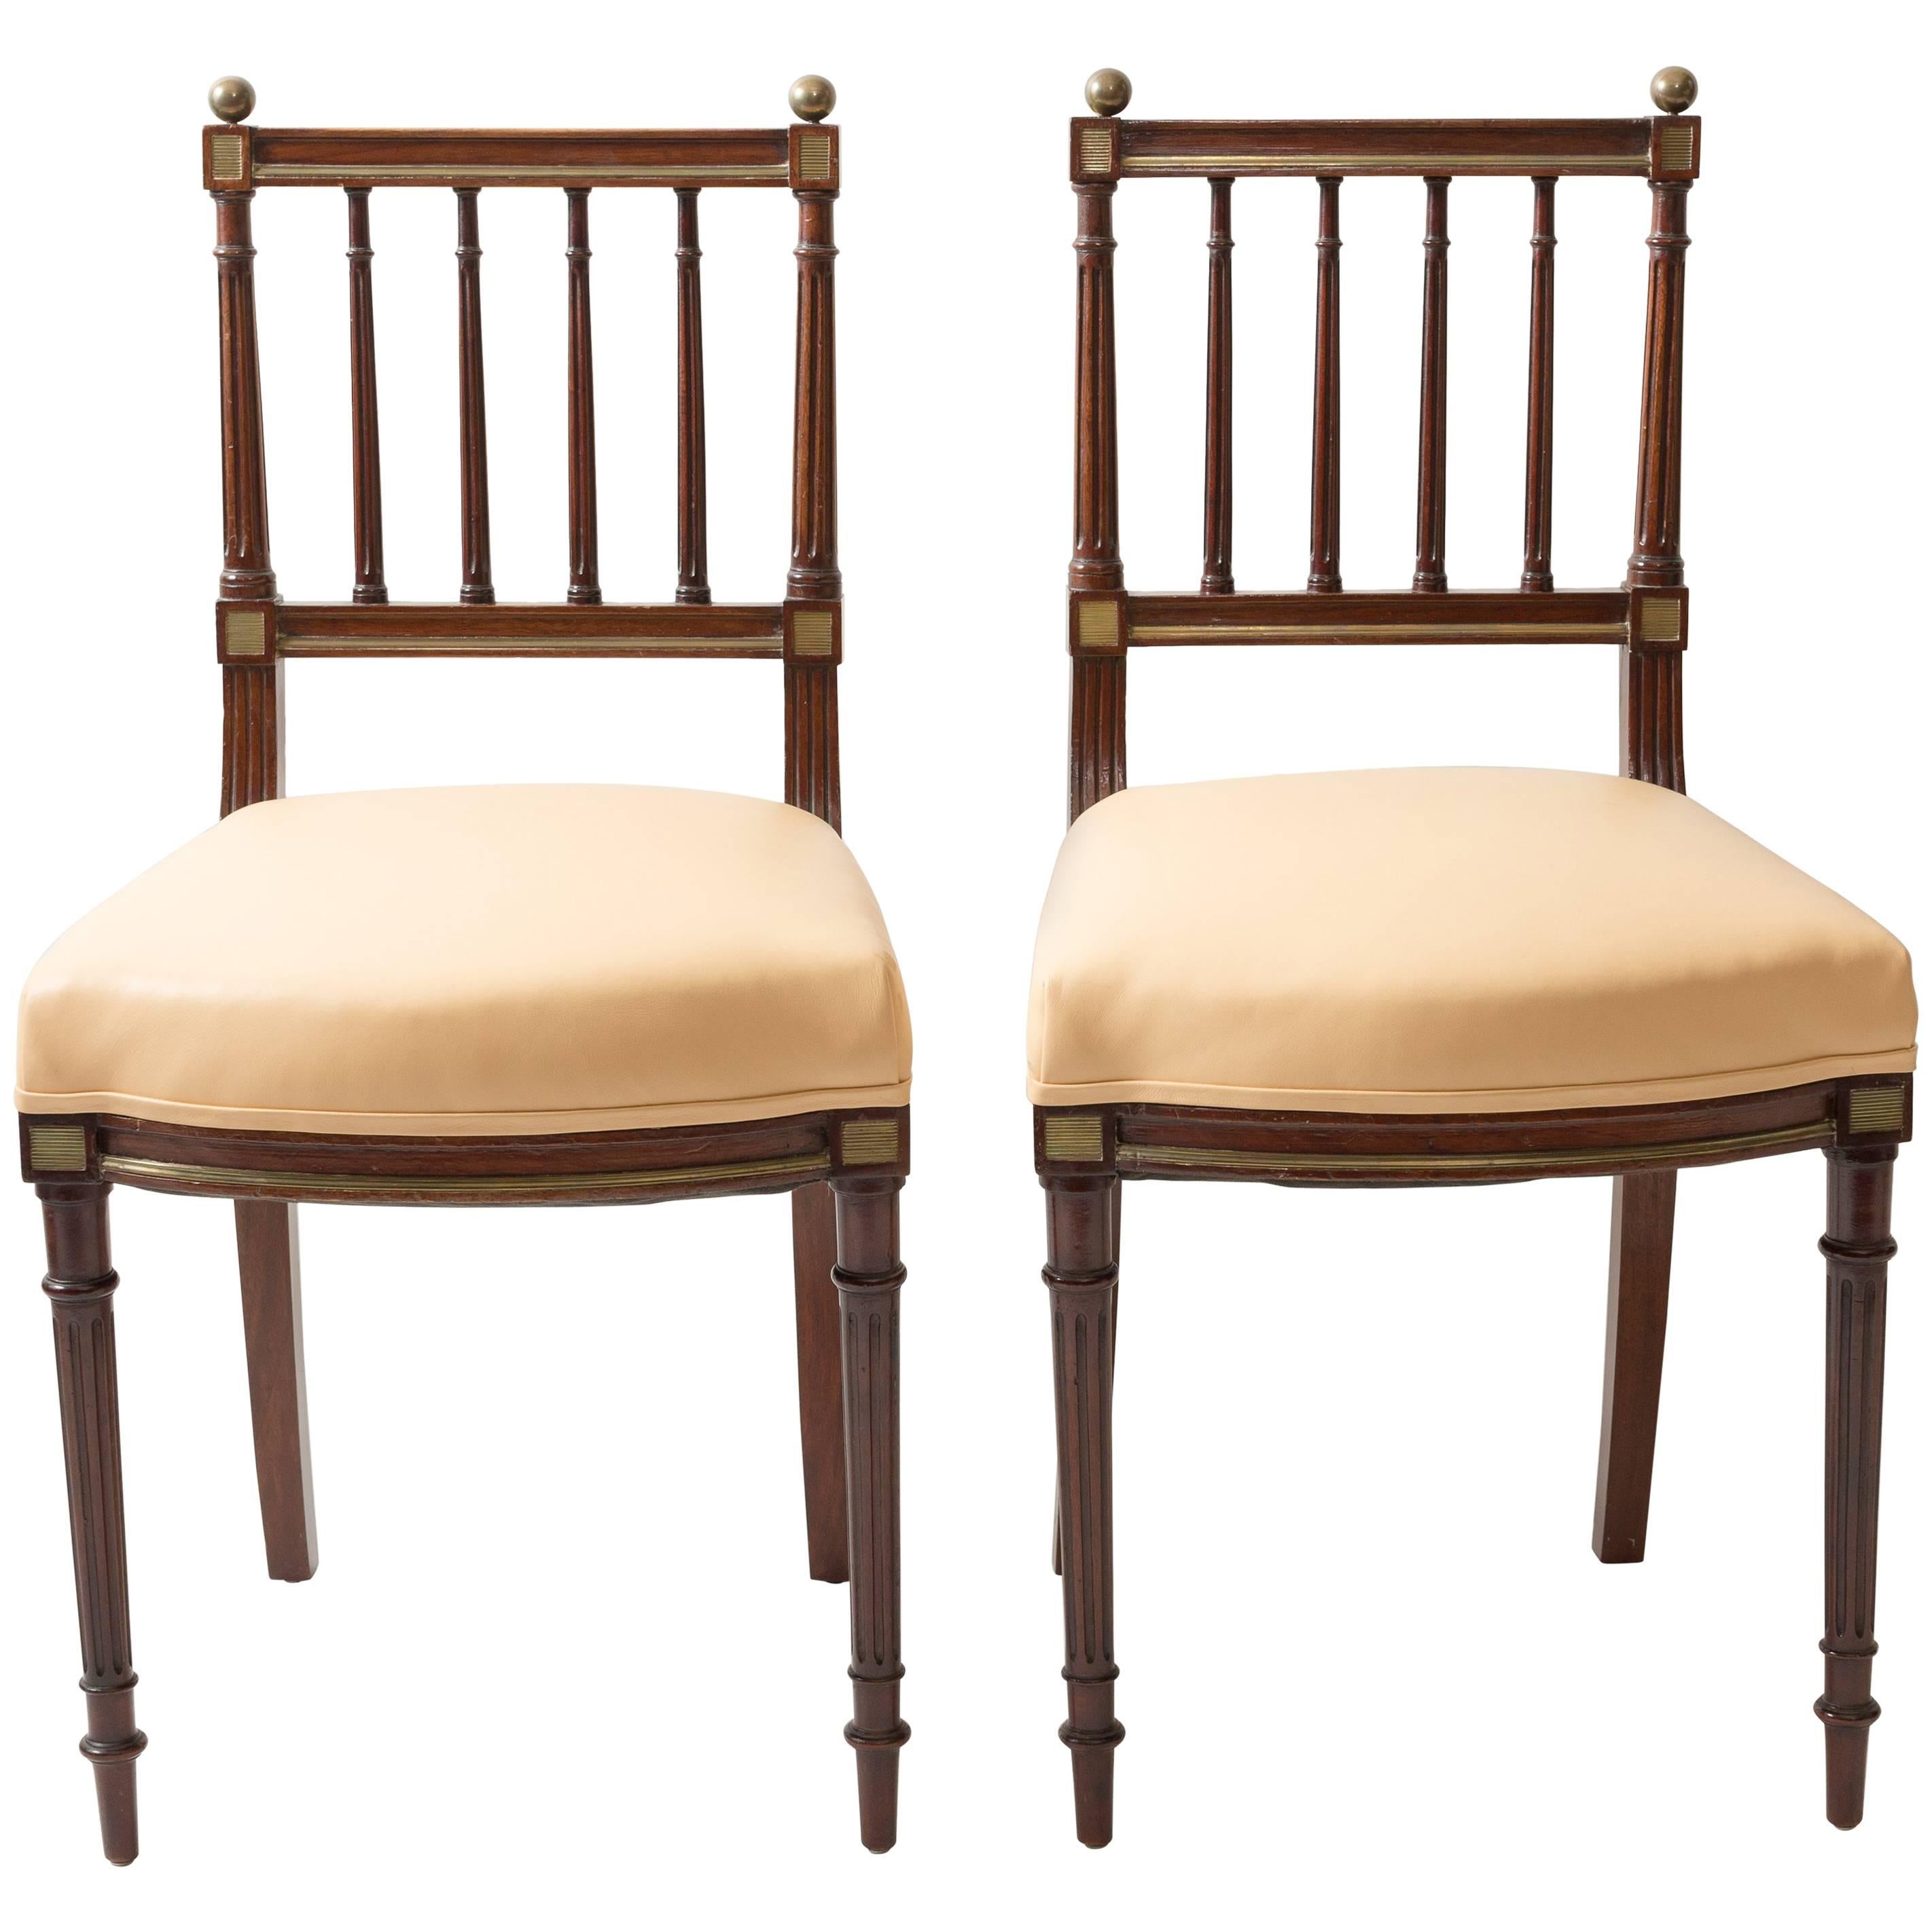 Paire de chaises d'opéra néoclassiques bordées d'or de style néoclassique